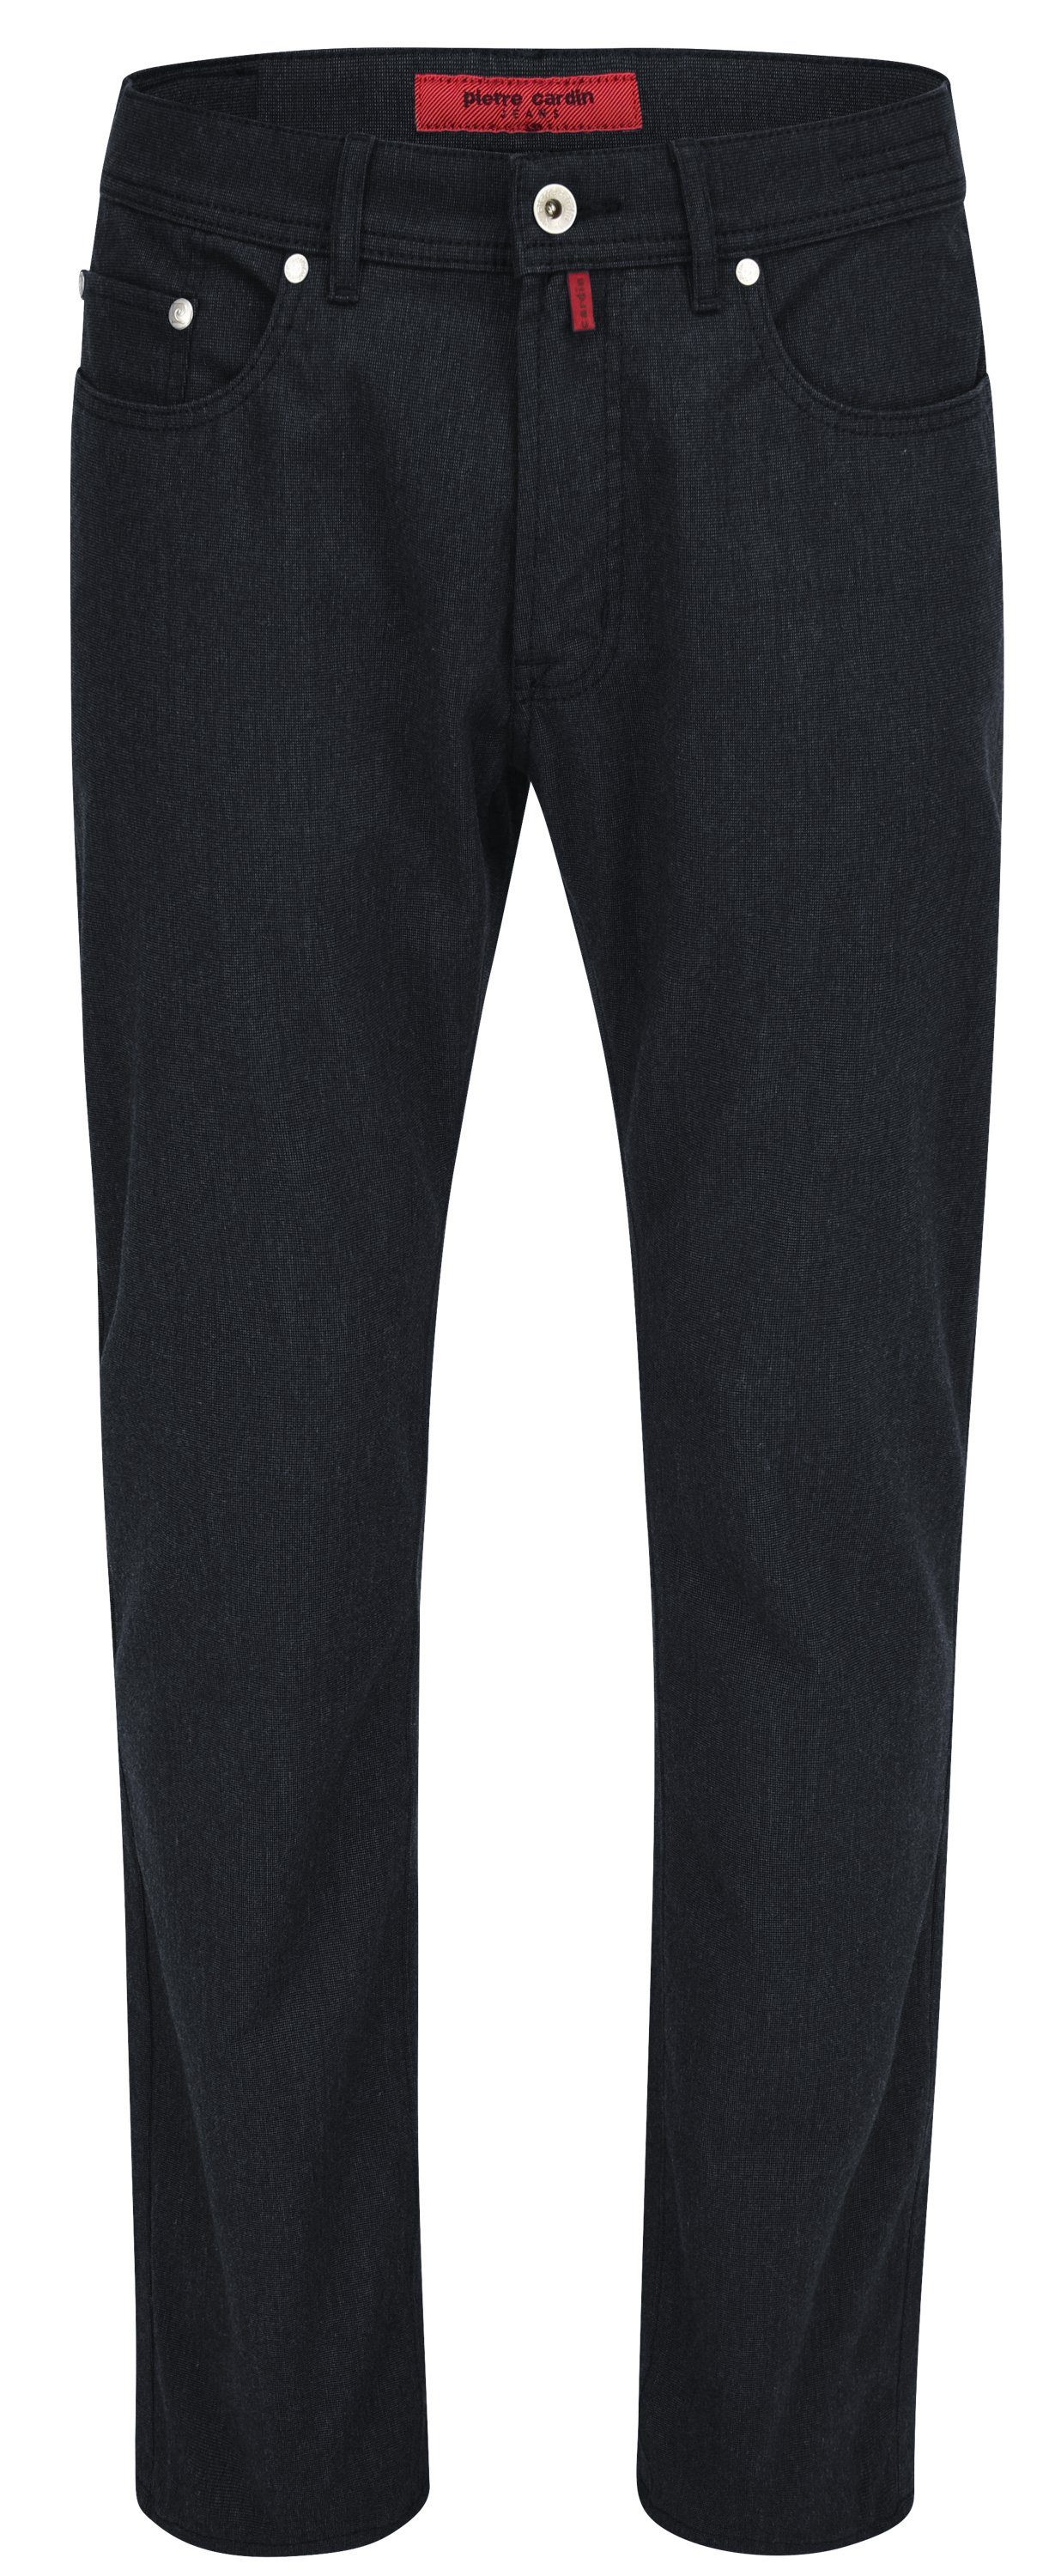 Pierre Cardin 5-Pocket-Jeans PIERRE CARDIN - VOYAGE marine LYON 3091 4715.69